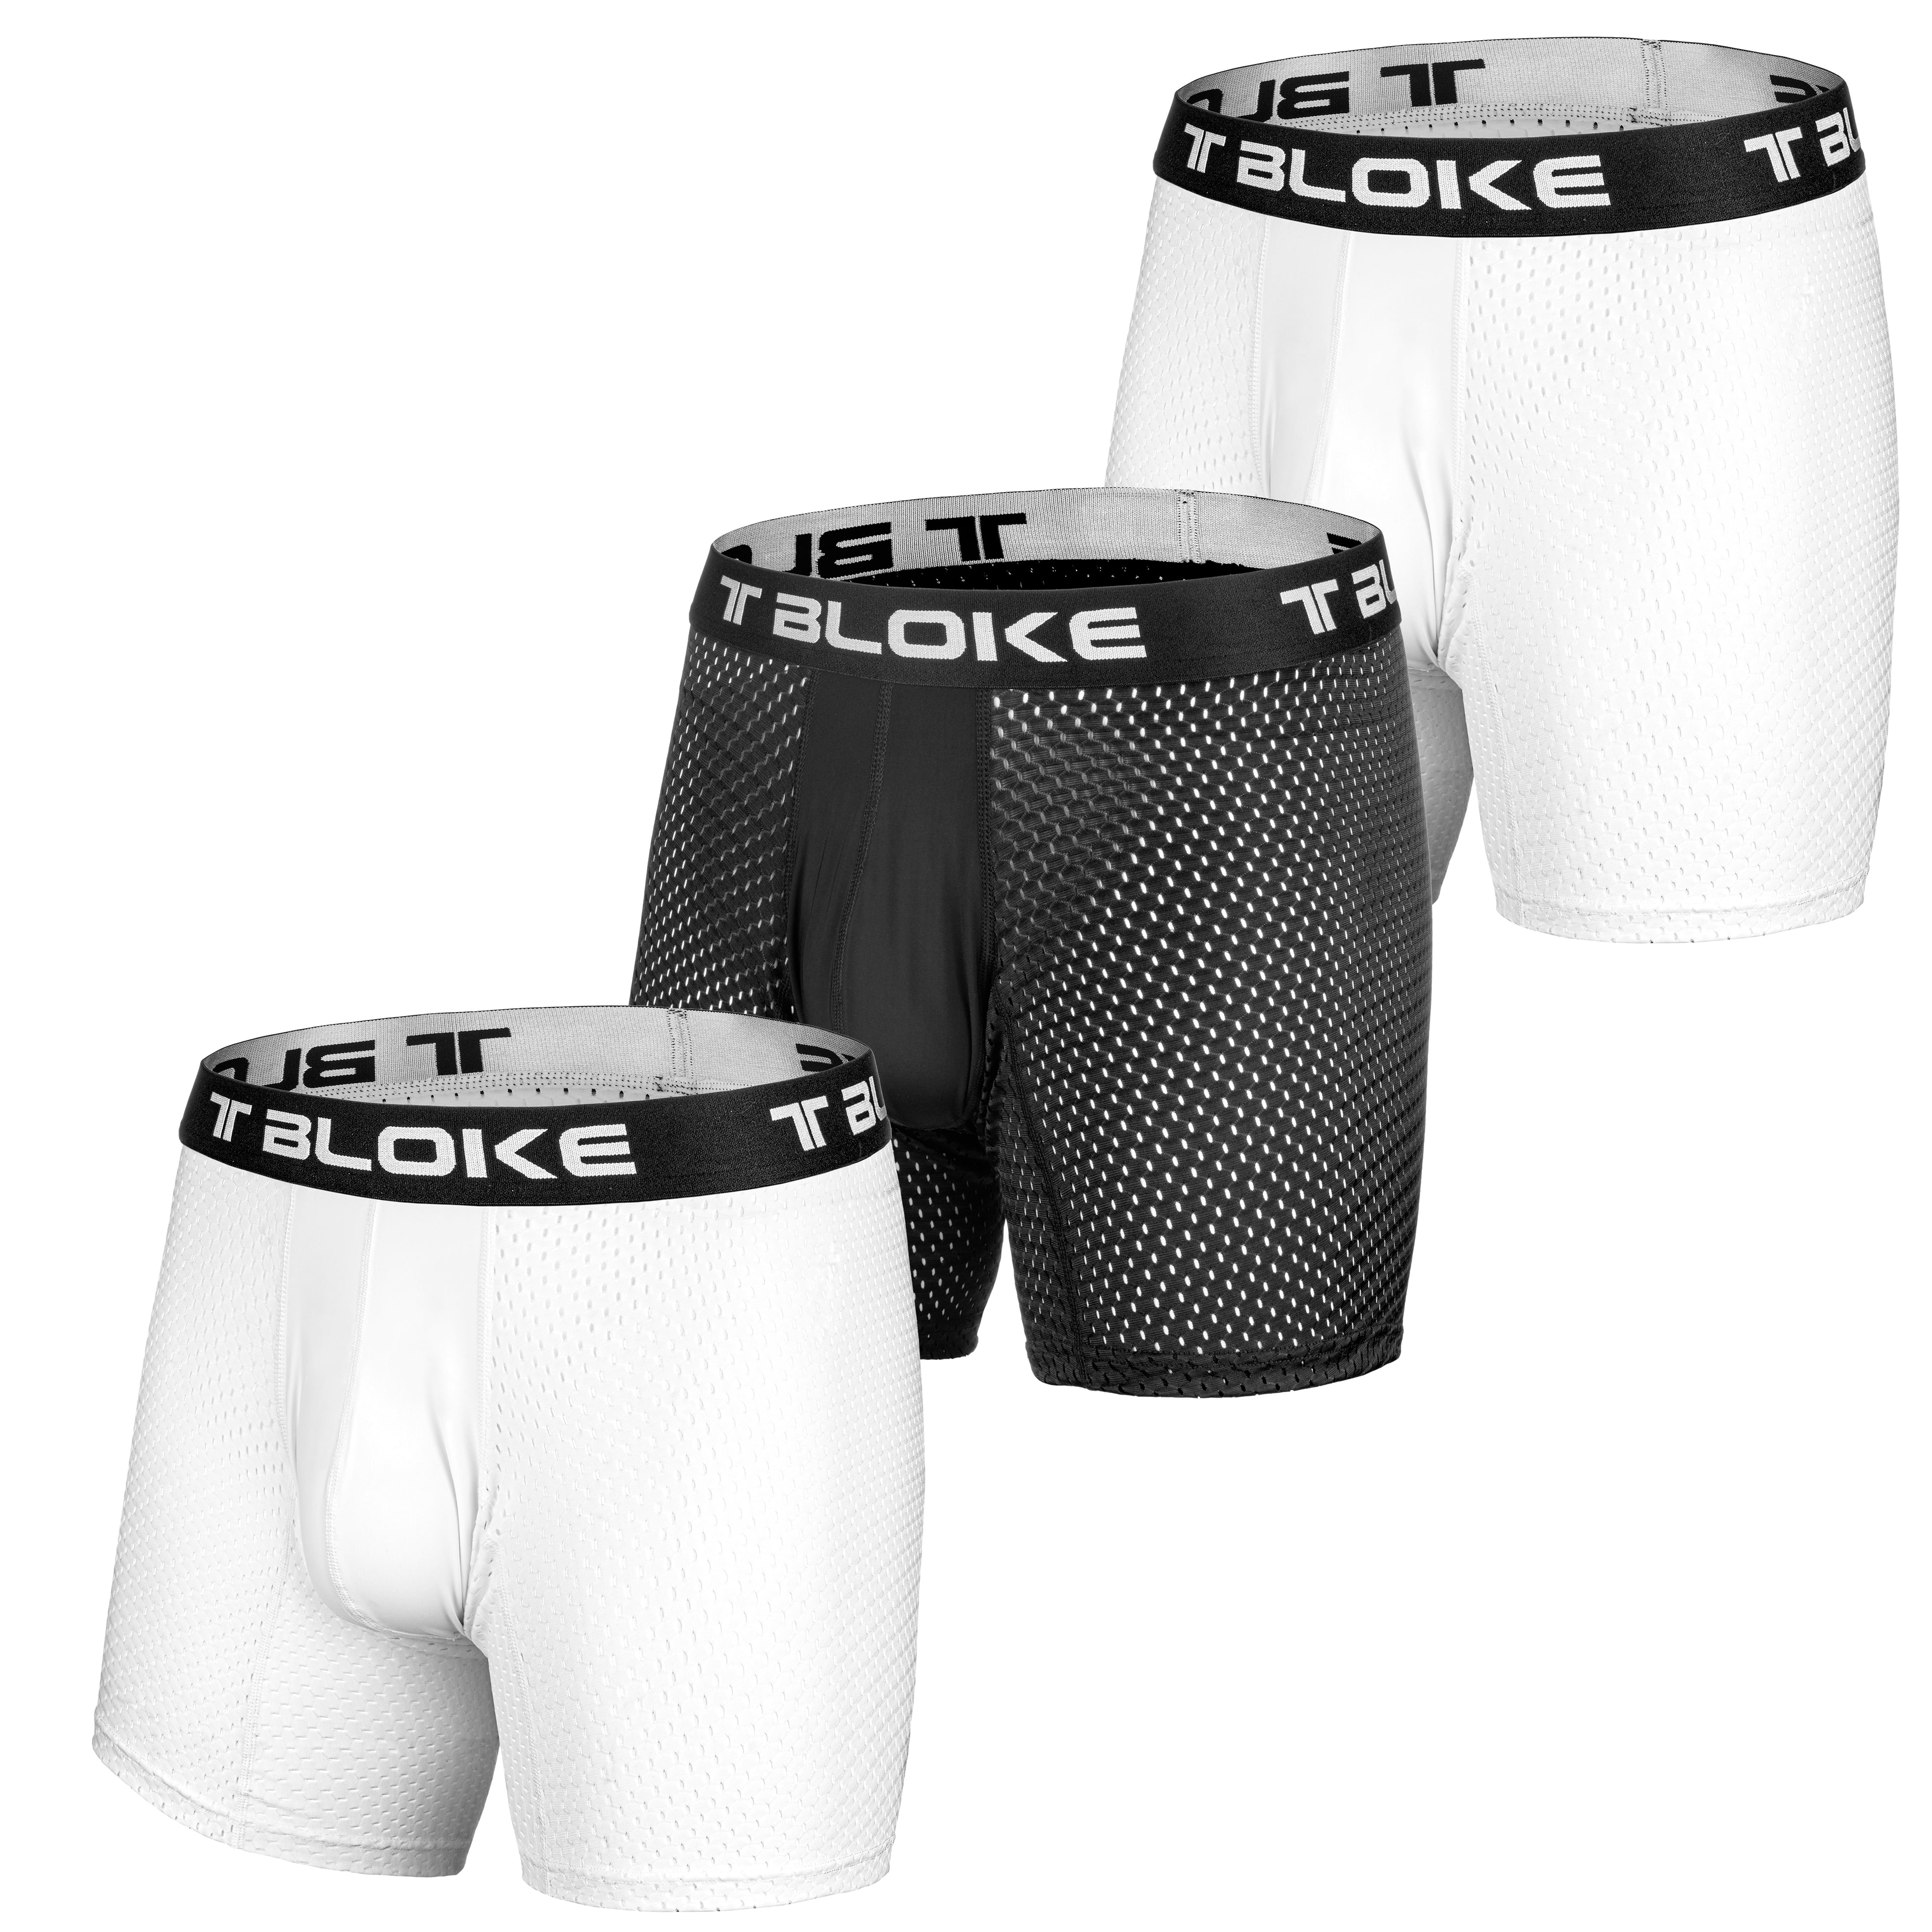 Details about   Men Boxer shorts Underwear Cartoons Comfortable Underpants Cotton Panties M~2XL 